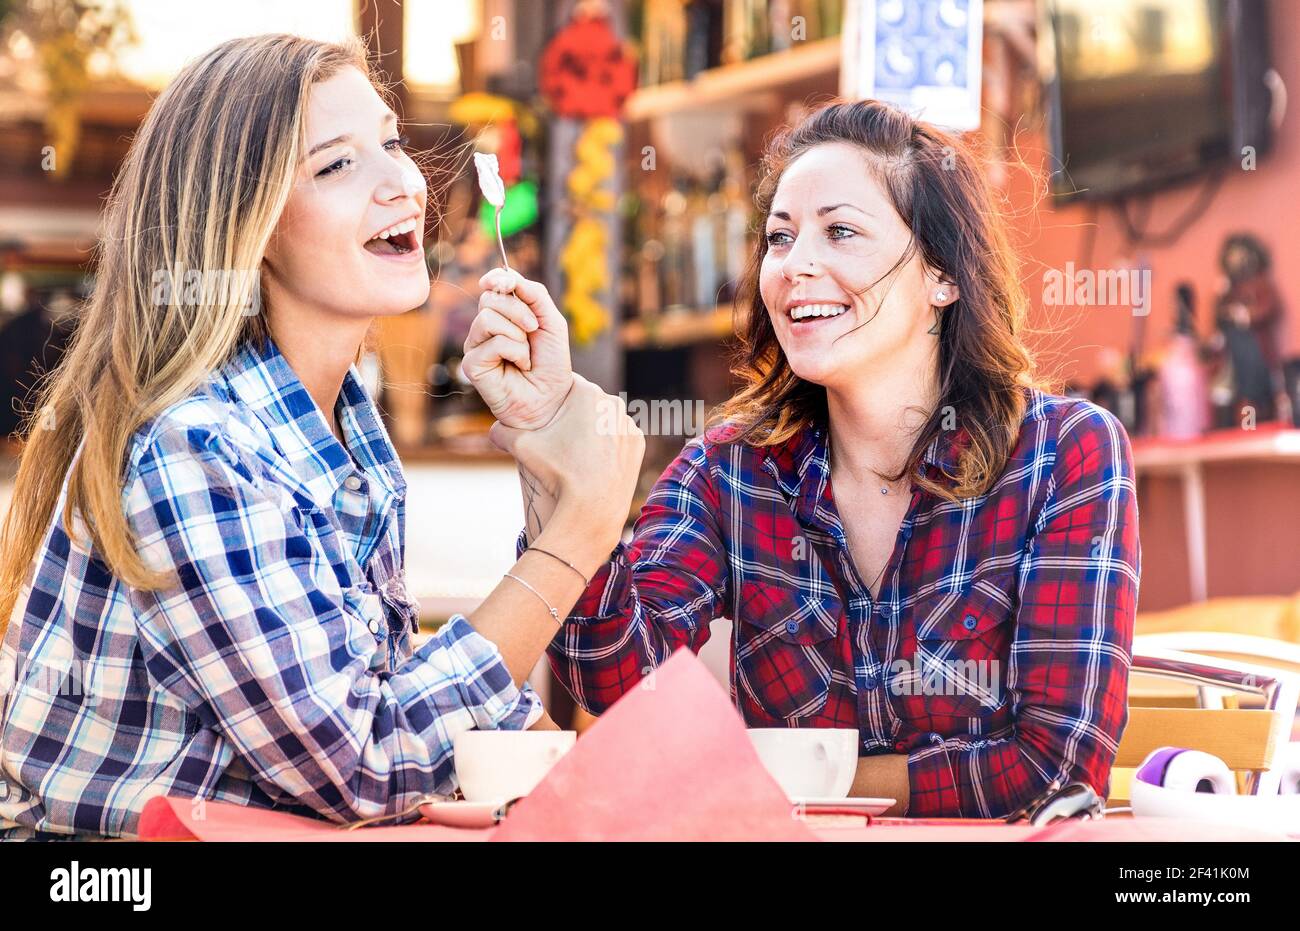 Freundinnen glücklich paar trinken Cappuccino und lachen zusammen - Hangout Konzept mit jungen Frauen reden und Spaß am Kaffee Bar Stockfoto